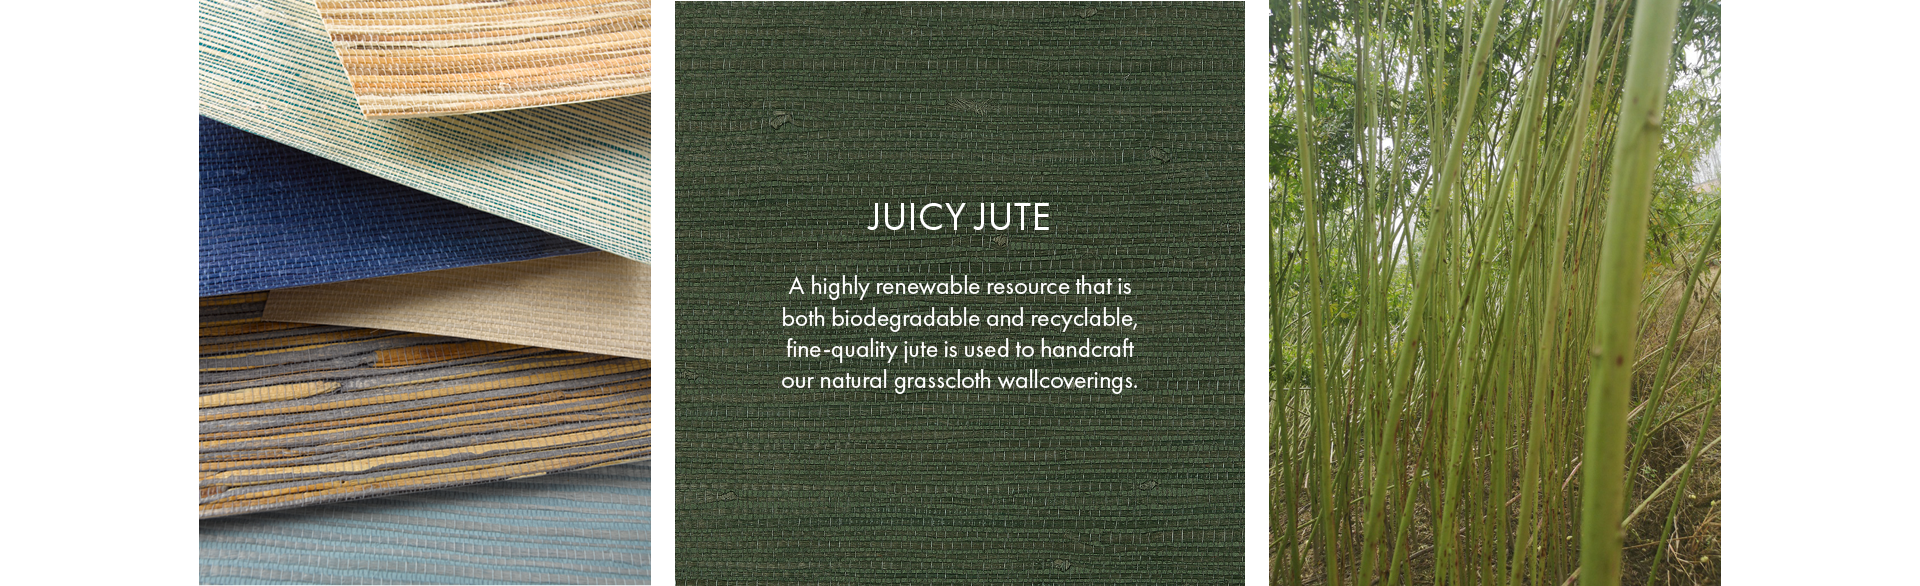 Juicy Jute